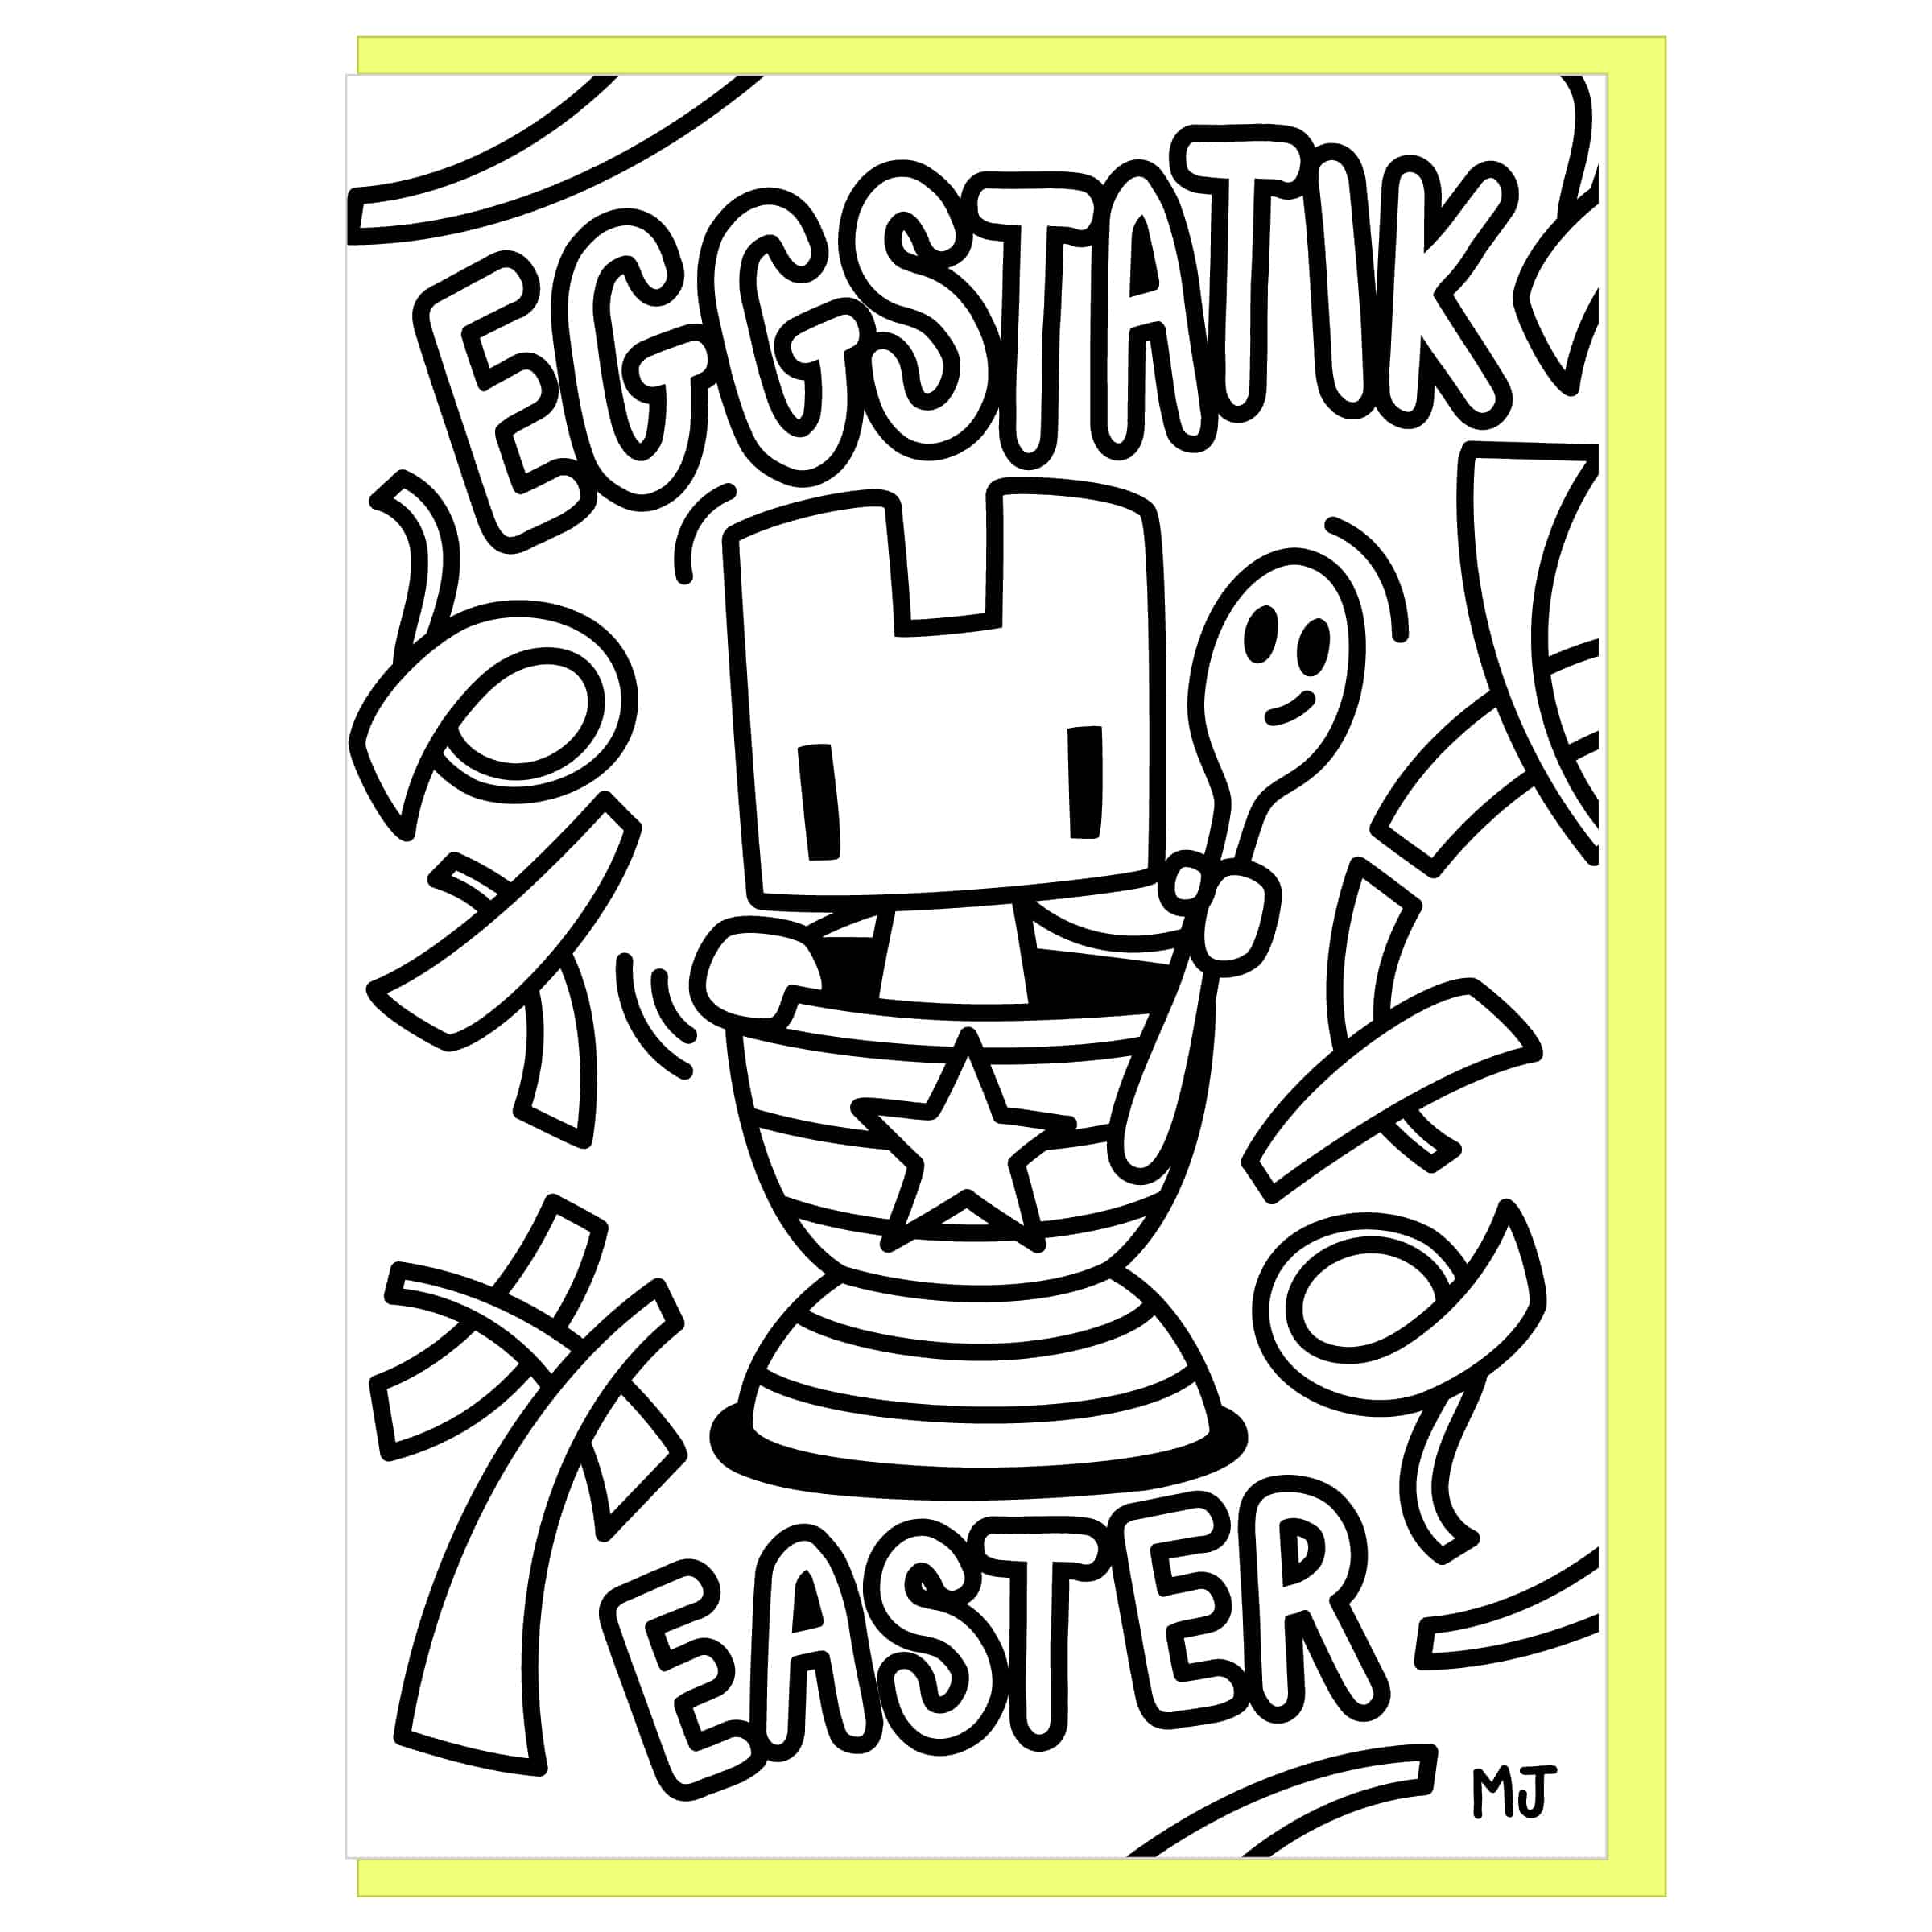 Eggstatik-Easter